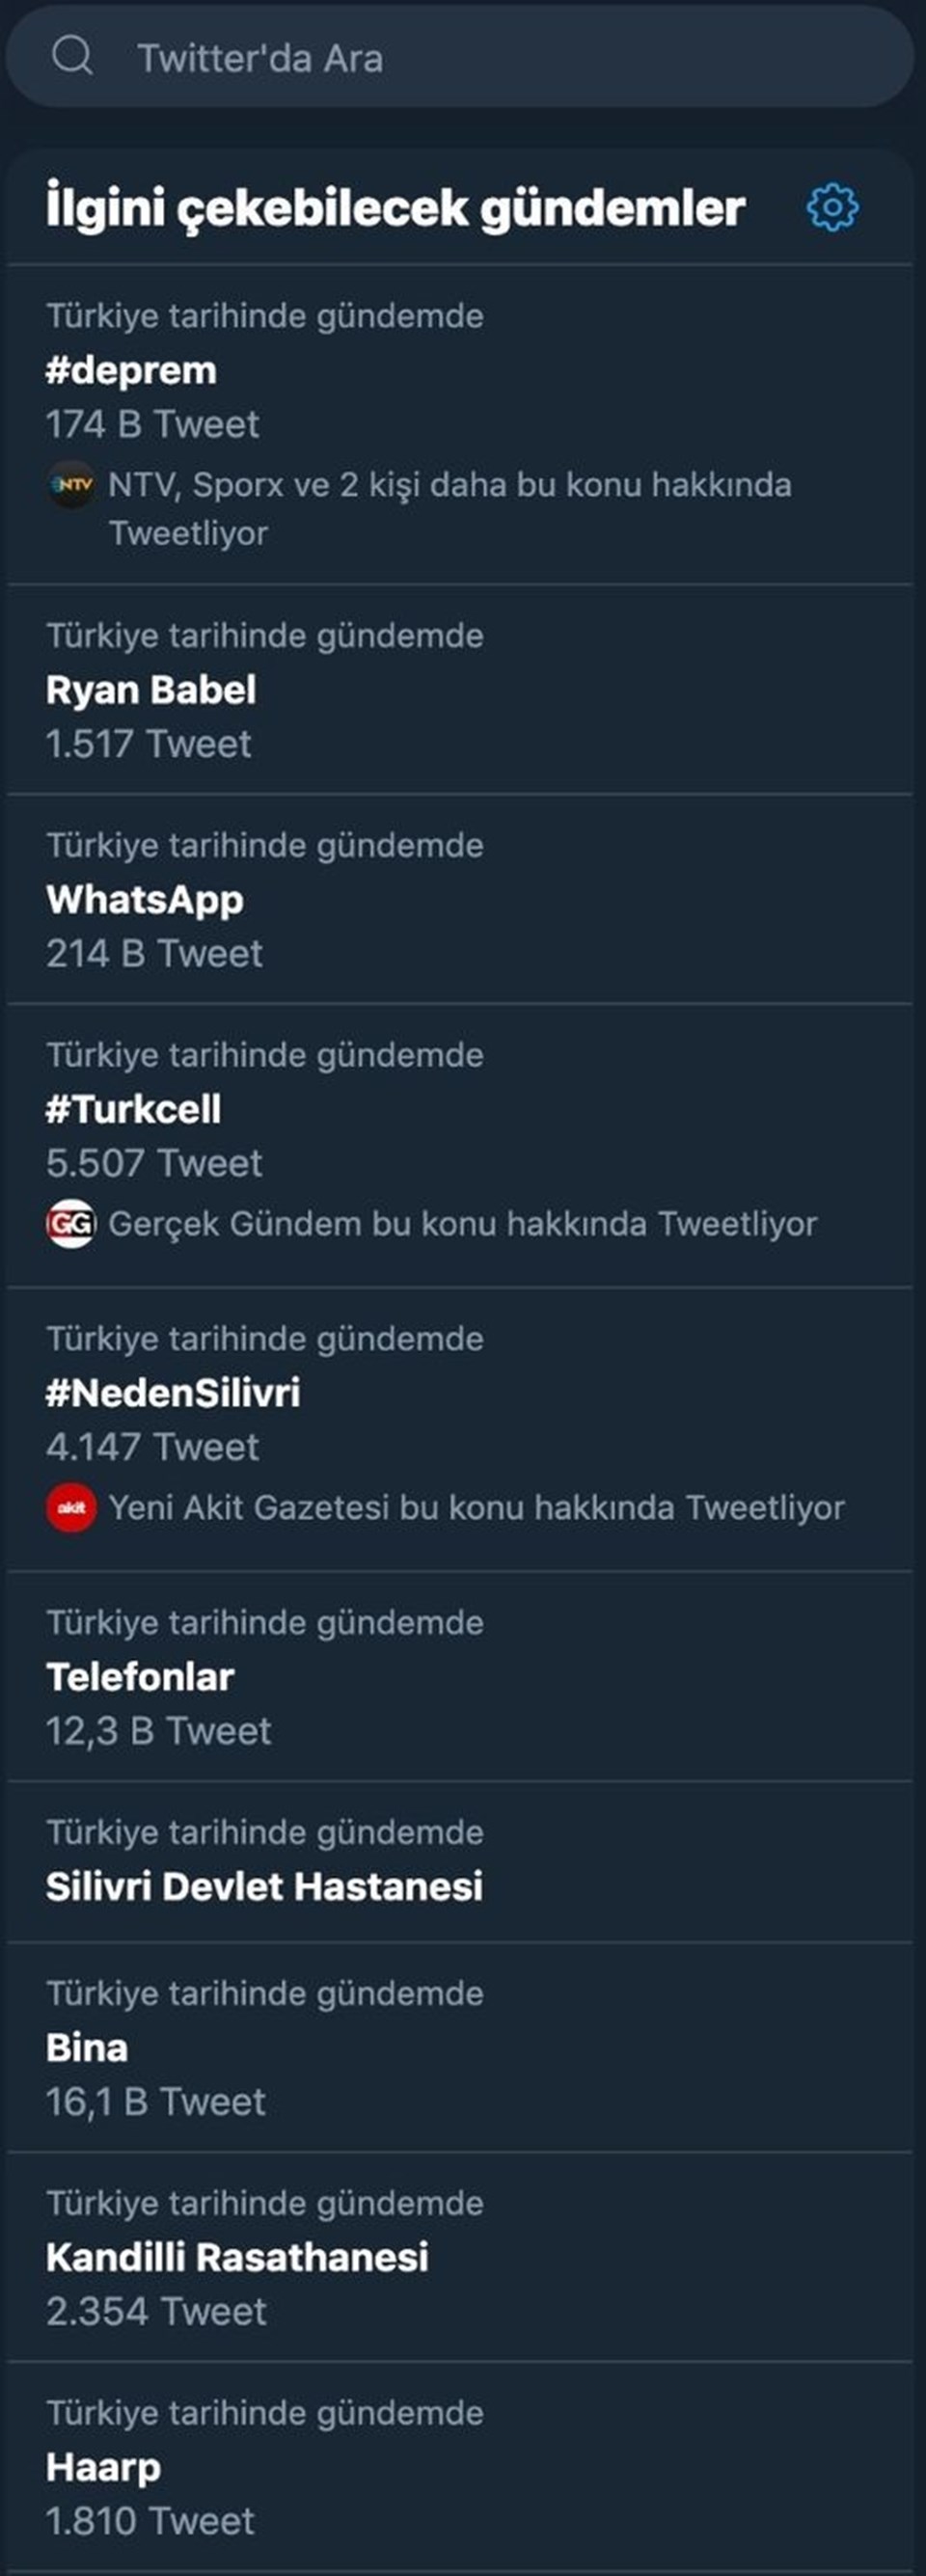 Dün meydana gelen deprem sonrası yaşanan iletişim sıkıntısı sosyal medyada geniş yer buldu. Kullanıcıların #WhatsApp, #Turkcell ve #Telefonlar hashtag’i ile yaptıkları paylaşımlar Twitter’ın en çok paylaşılan konularından oldu.  